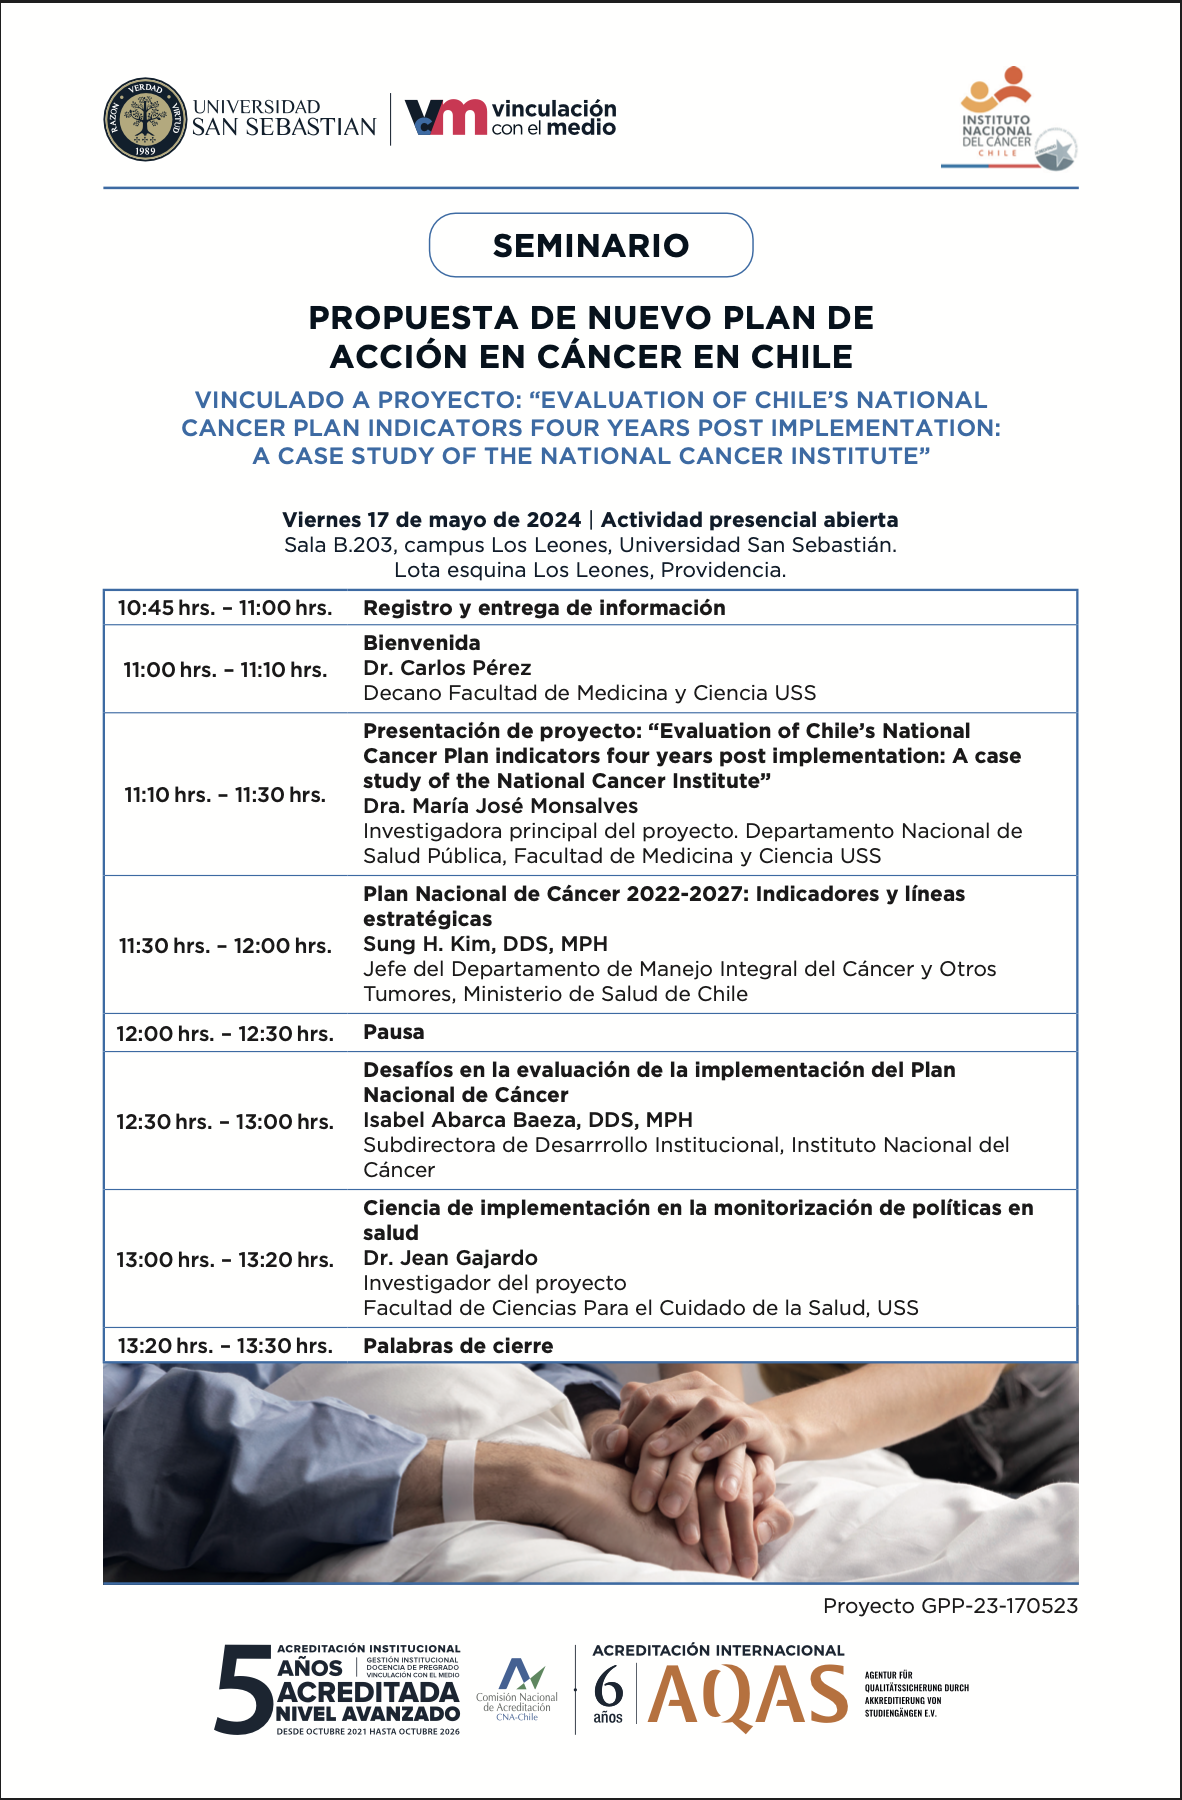 Seminario "Propuesta de nuevo plan de acción en cáncer en Chile"